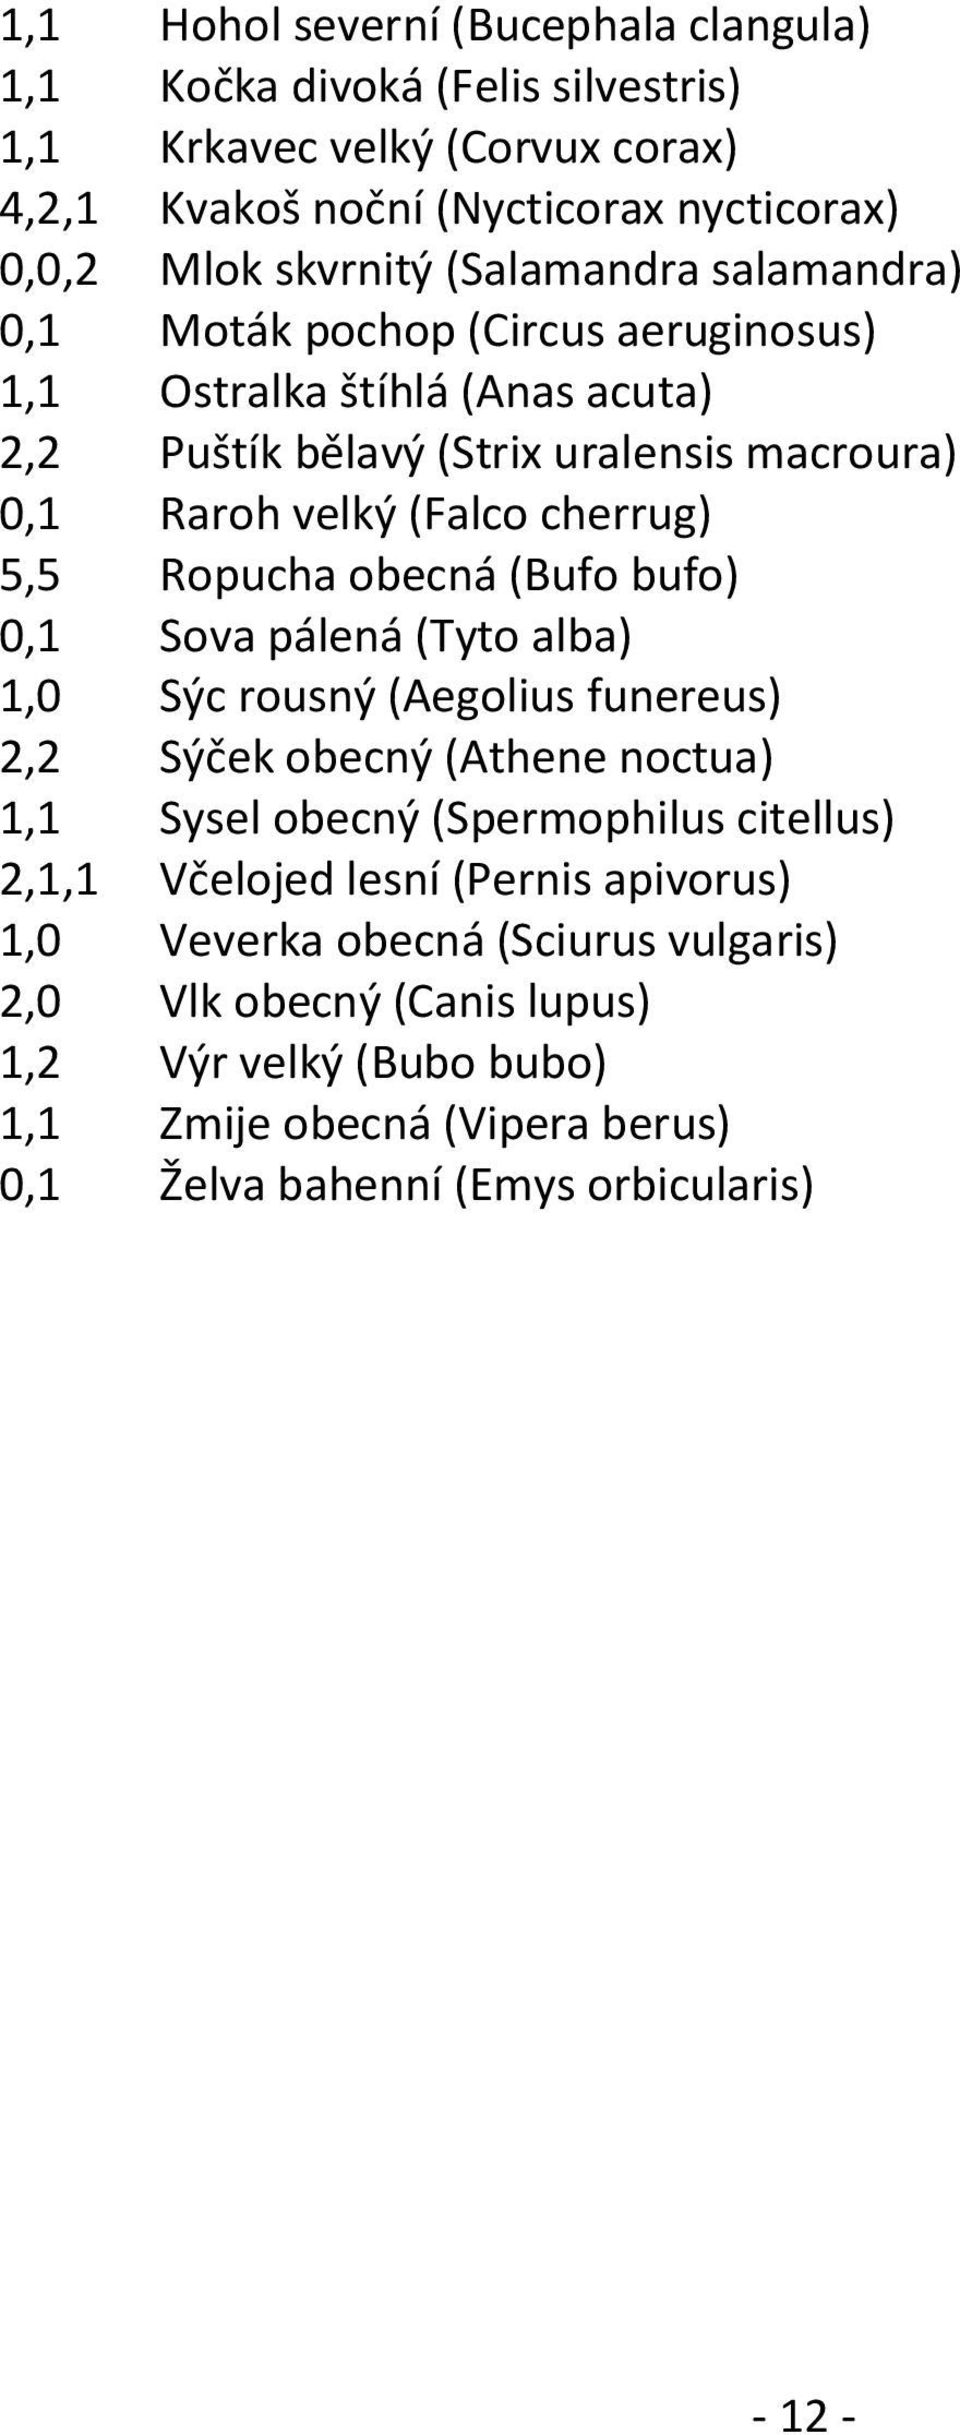 Ropucha obecná (Bufo bufo) 0,1 Sova pálená (Tyto alba) 1,0 Sýc rousný (Aegolius funereus) 2,2 Sýček obecný (Athene noctua) 1,1 Sysel obecný (Spermophilus citellus) 2,1,1 Včelojed